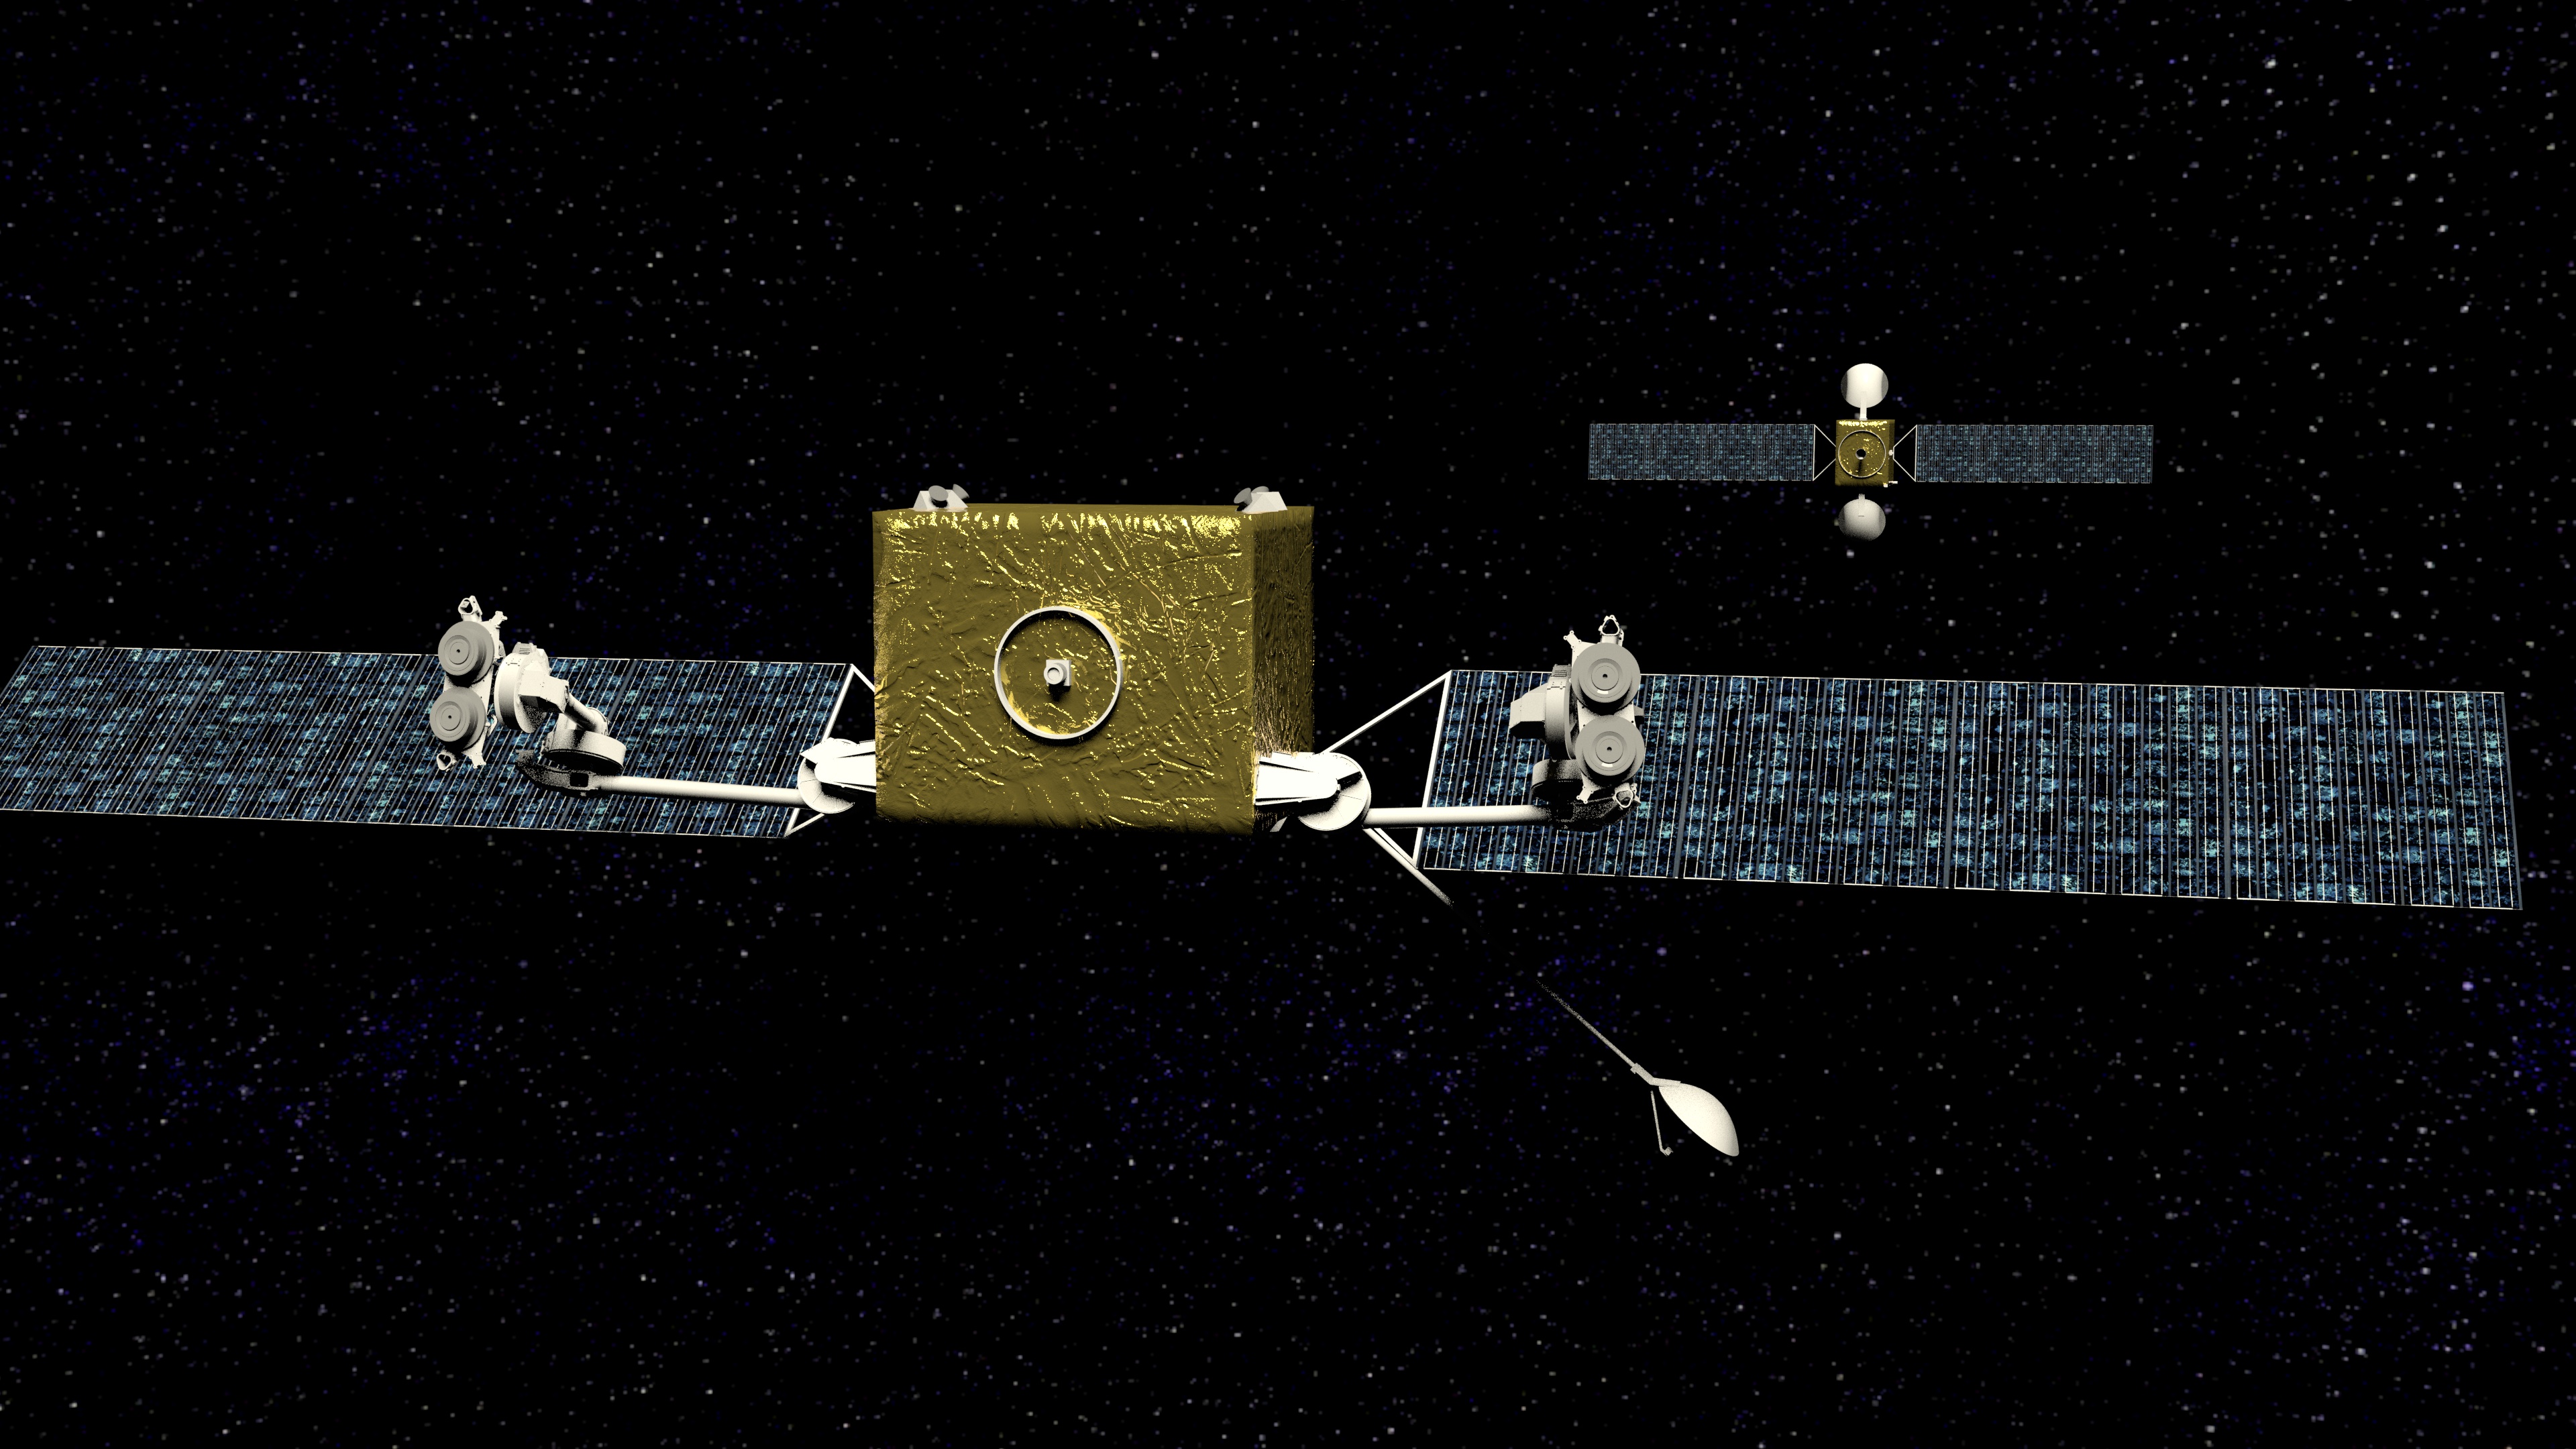 Infinite Orbits s'allie avec Intelsat pour son nanosatellite de services en orbite géostationnaire